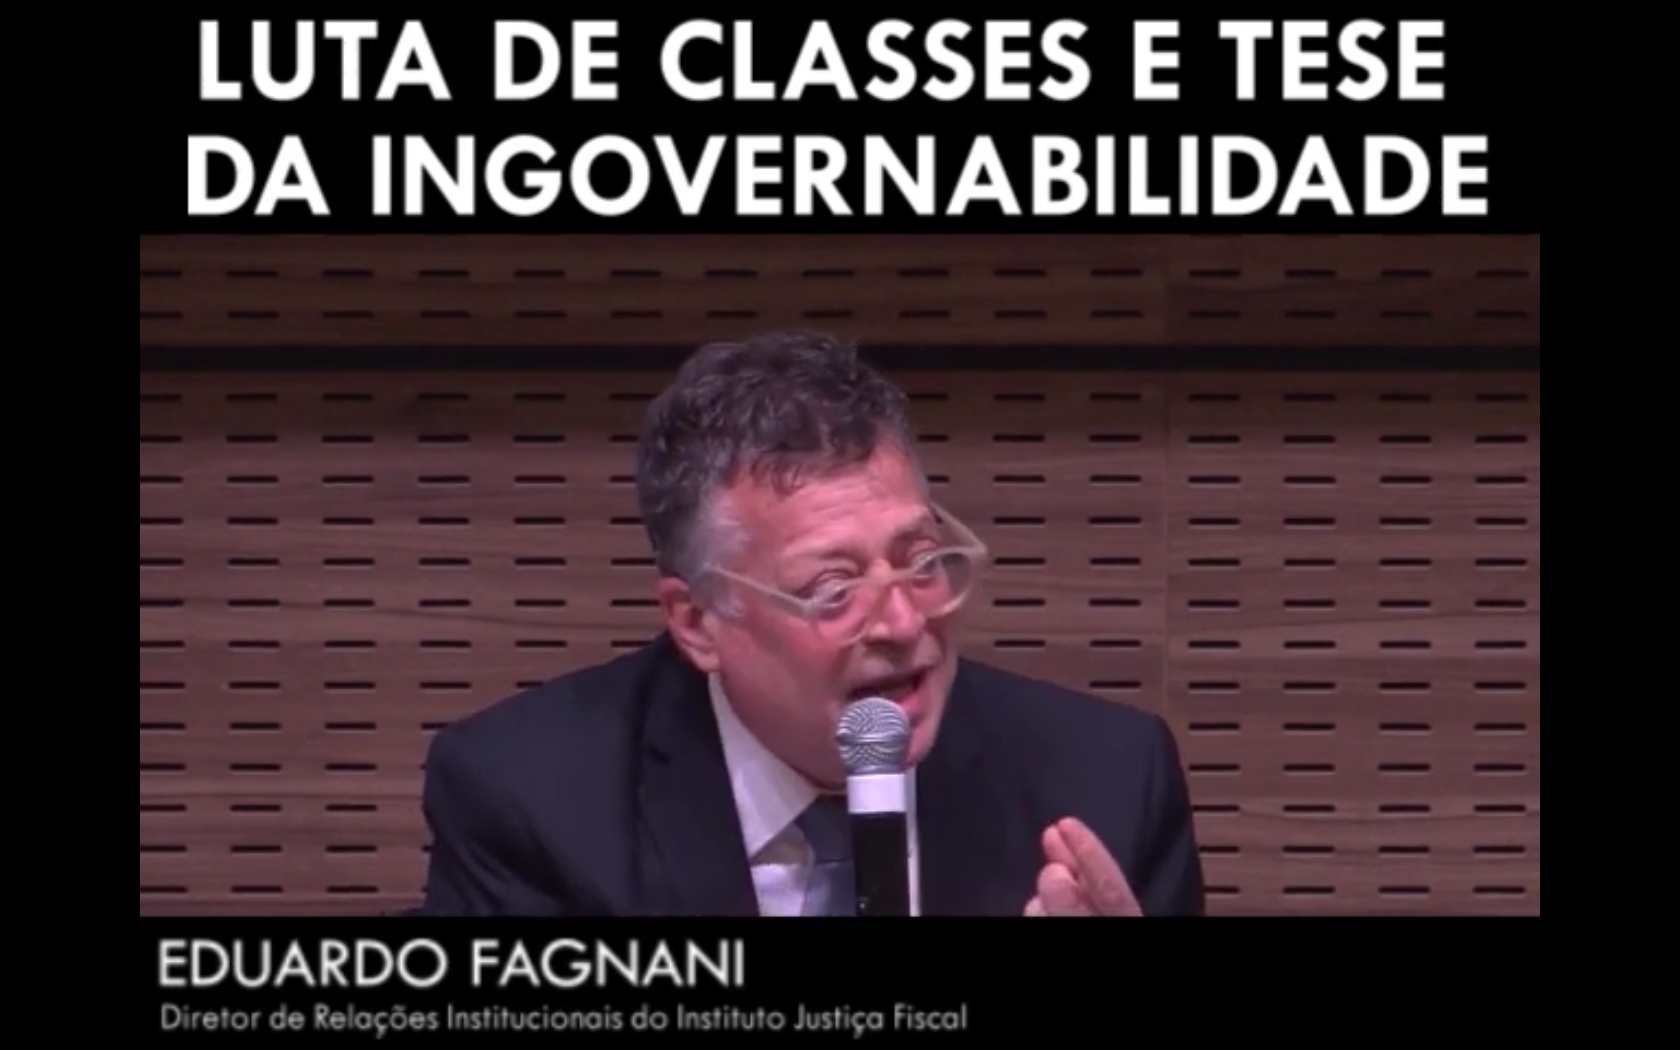 Luta de classes e tese da ingovernabilidade - Eduardo Fagnani